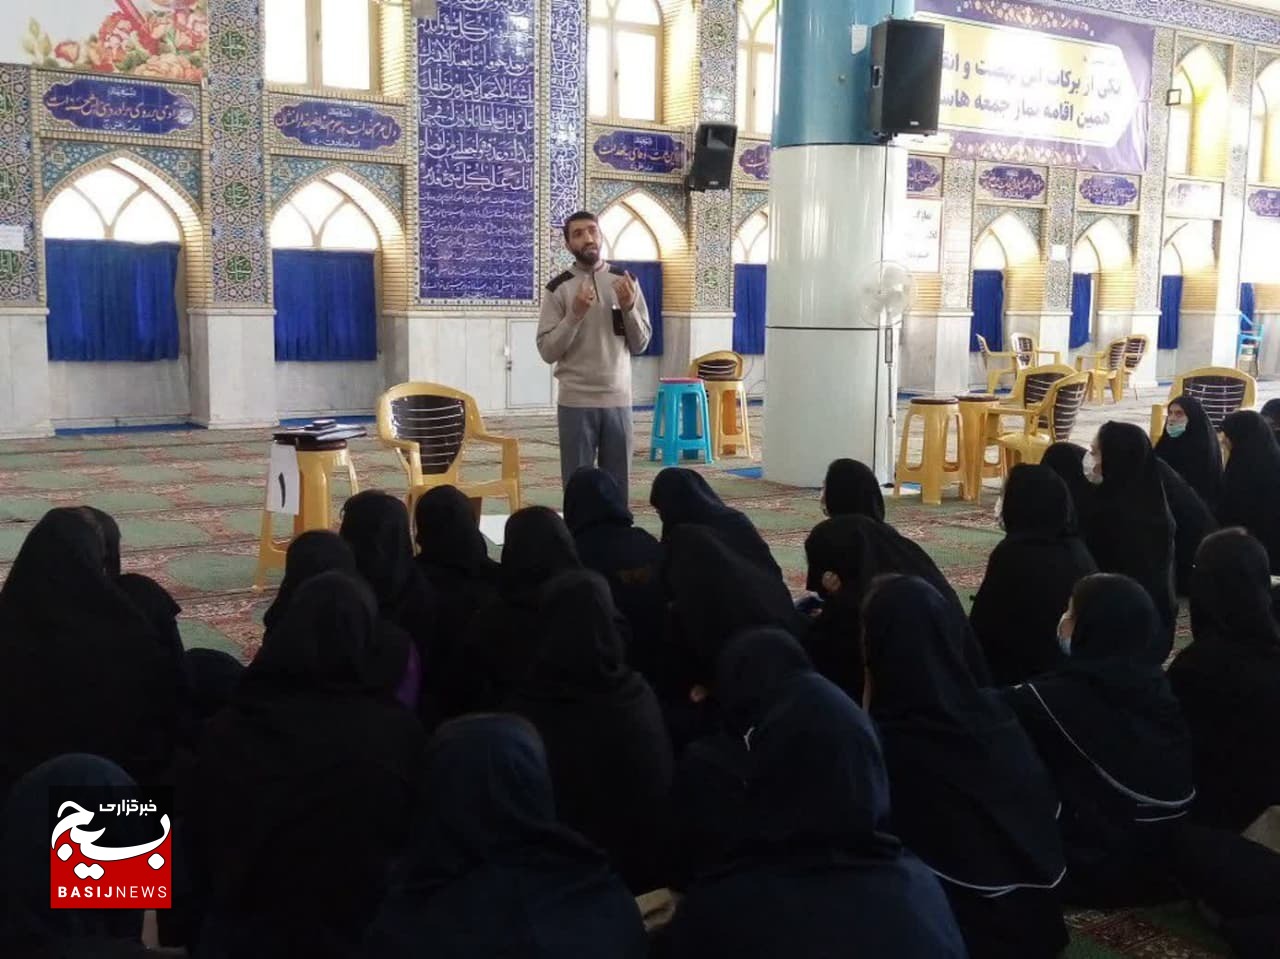 فعالیت در درس آمادگی دفاعی مدارس تا شرکت در اردوهای جهادی بانوان/ خانم هایی که بنایی نیز می کنند